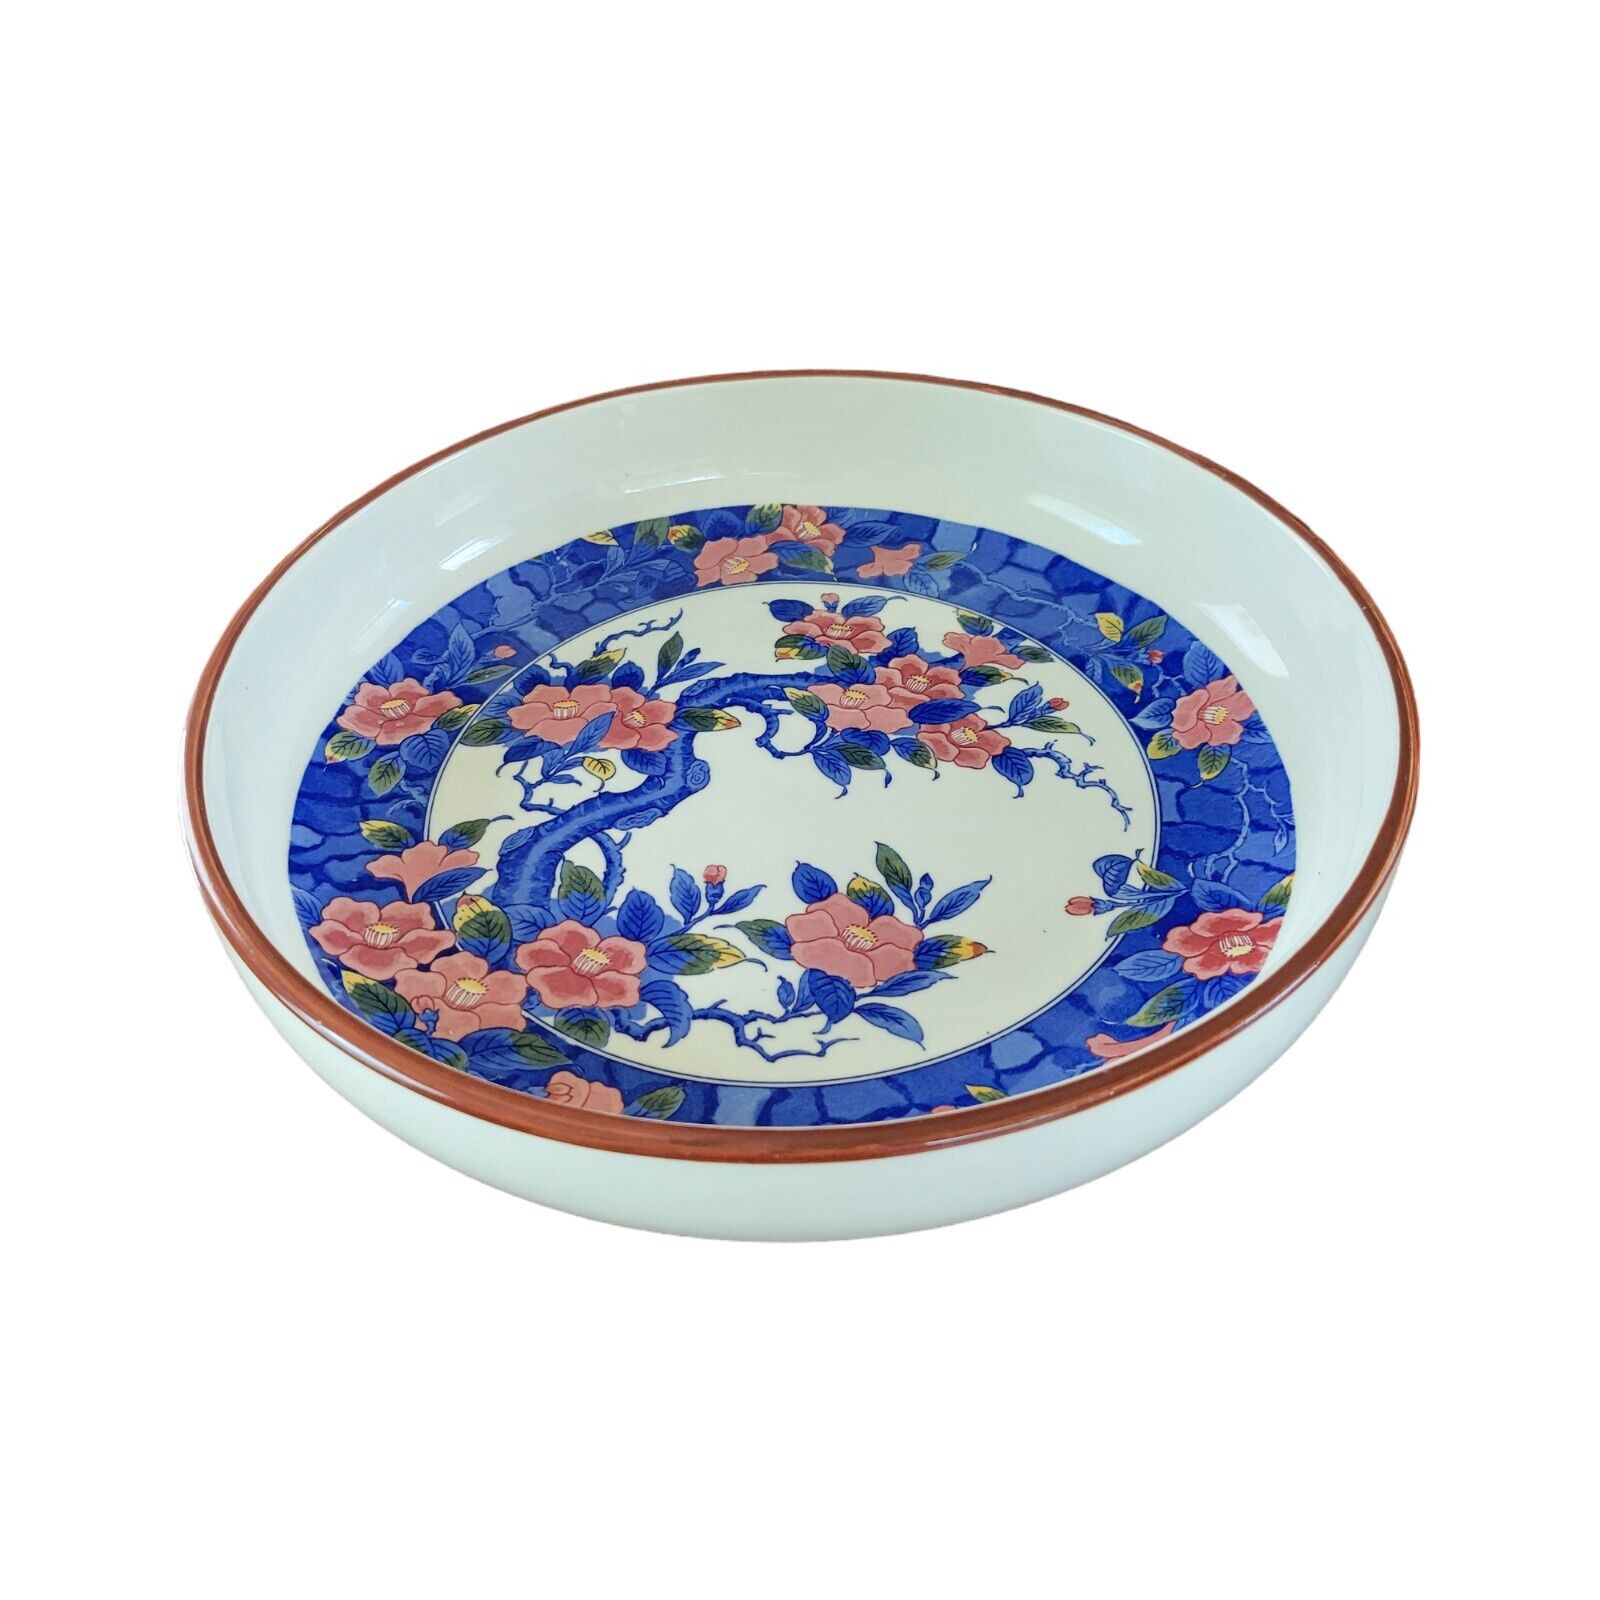 Large Vintage Japanese Porcelain Ceramic Shallow Serving Bowl White Blue Floral.